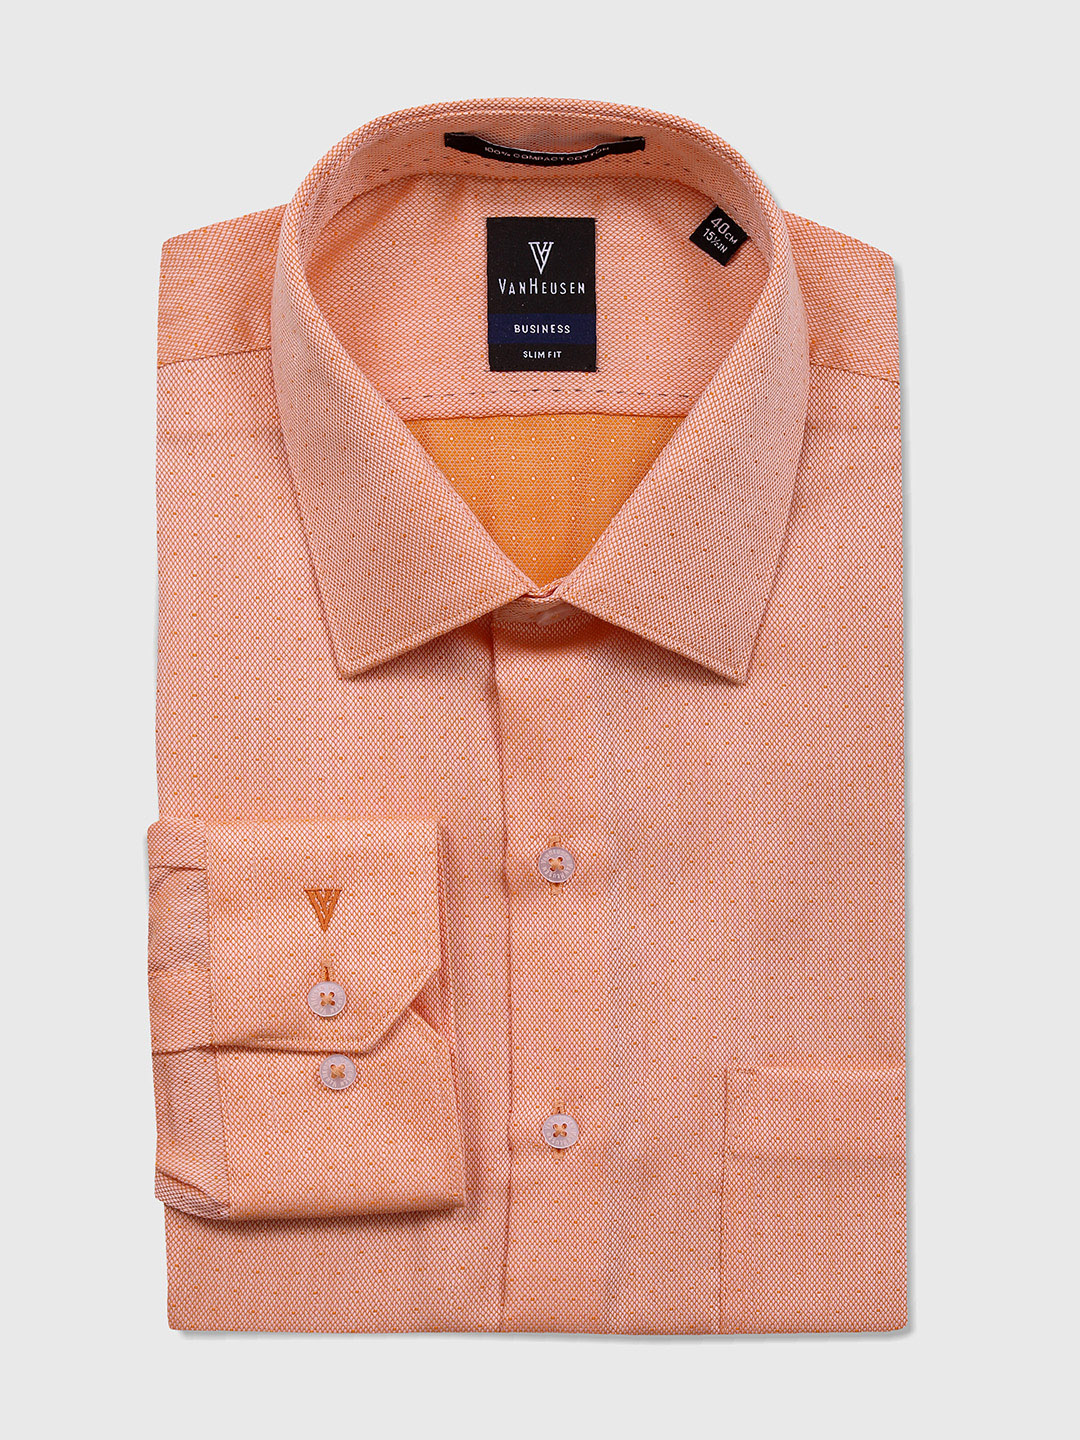 Van Heusen orange formal shirt - G3 